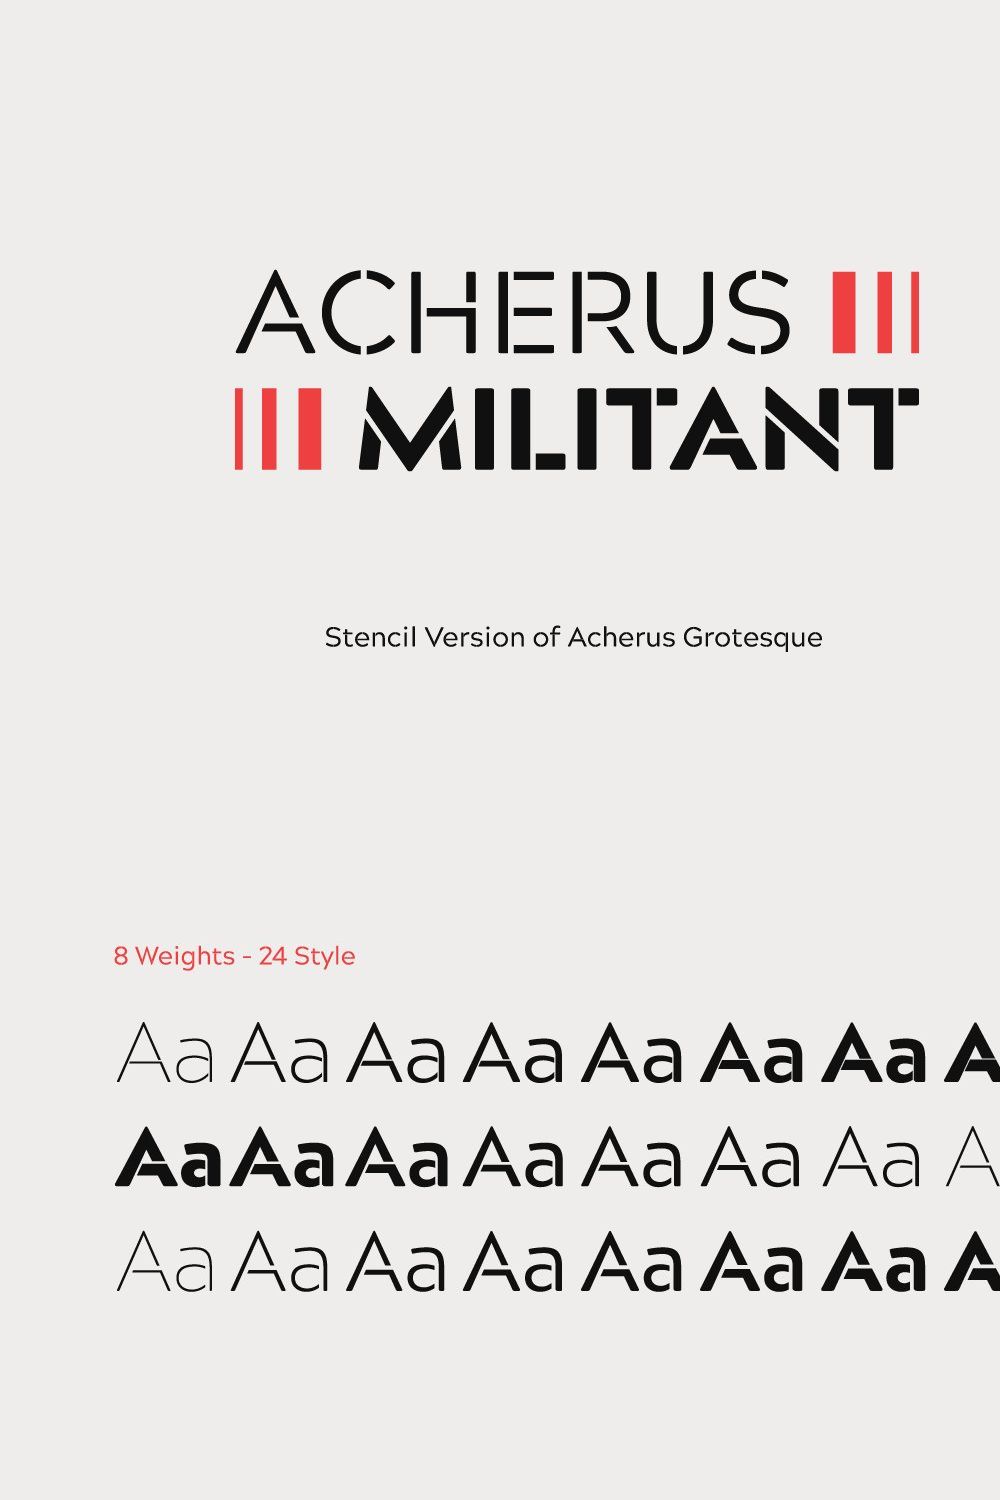 Acherus Militant 60% Off pinterest preview image.